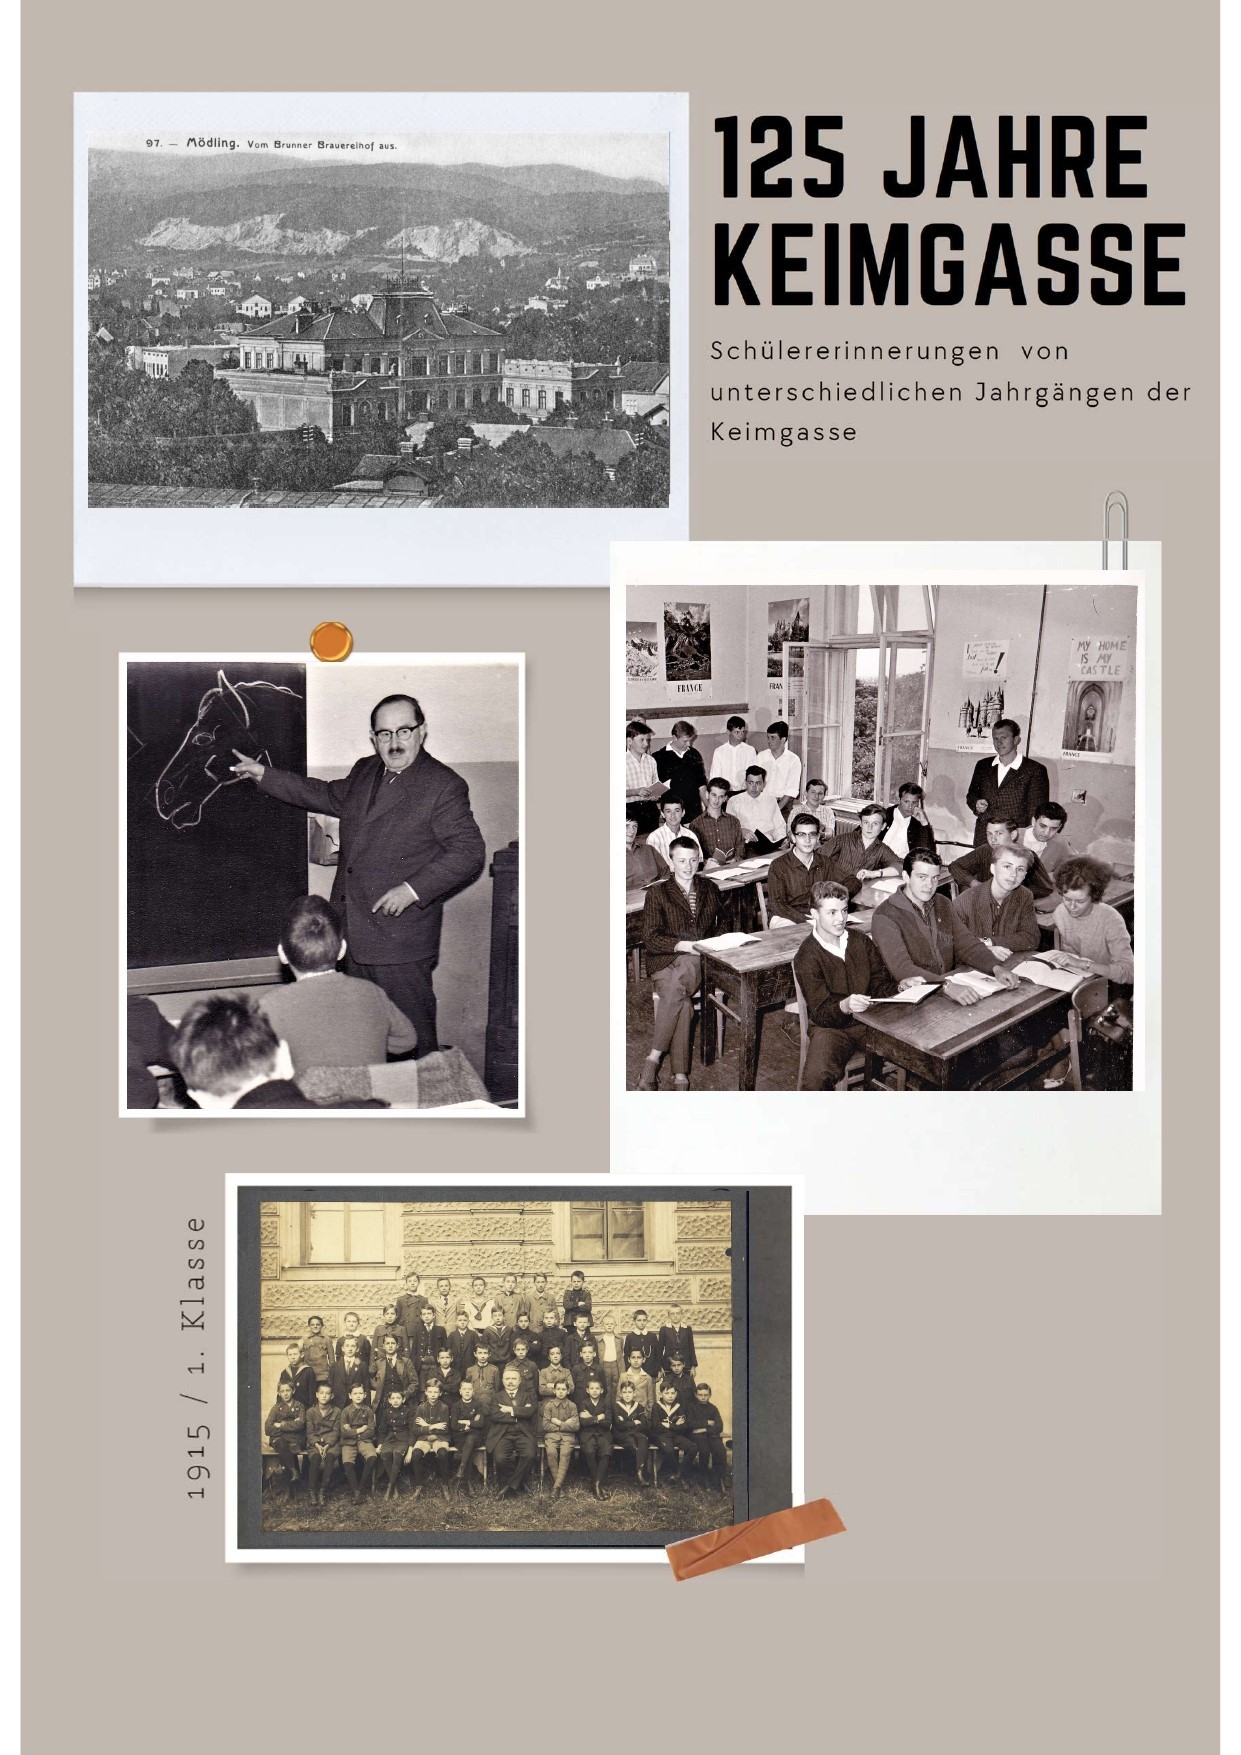 125 Jahre Keimgasse - Das Buch des Absolventenvereins